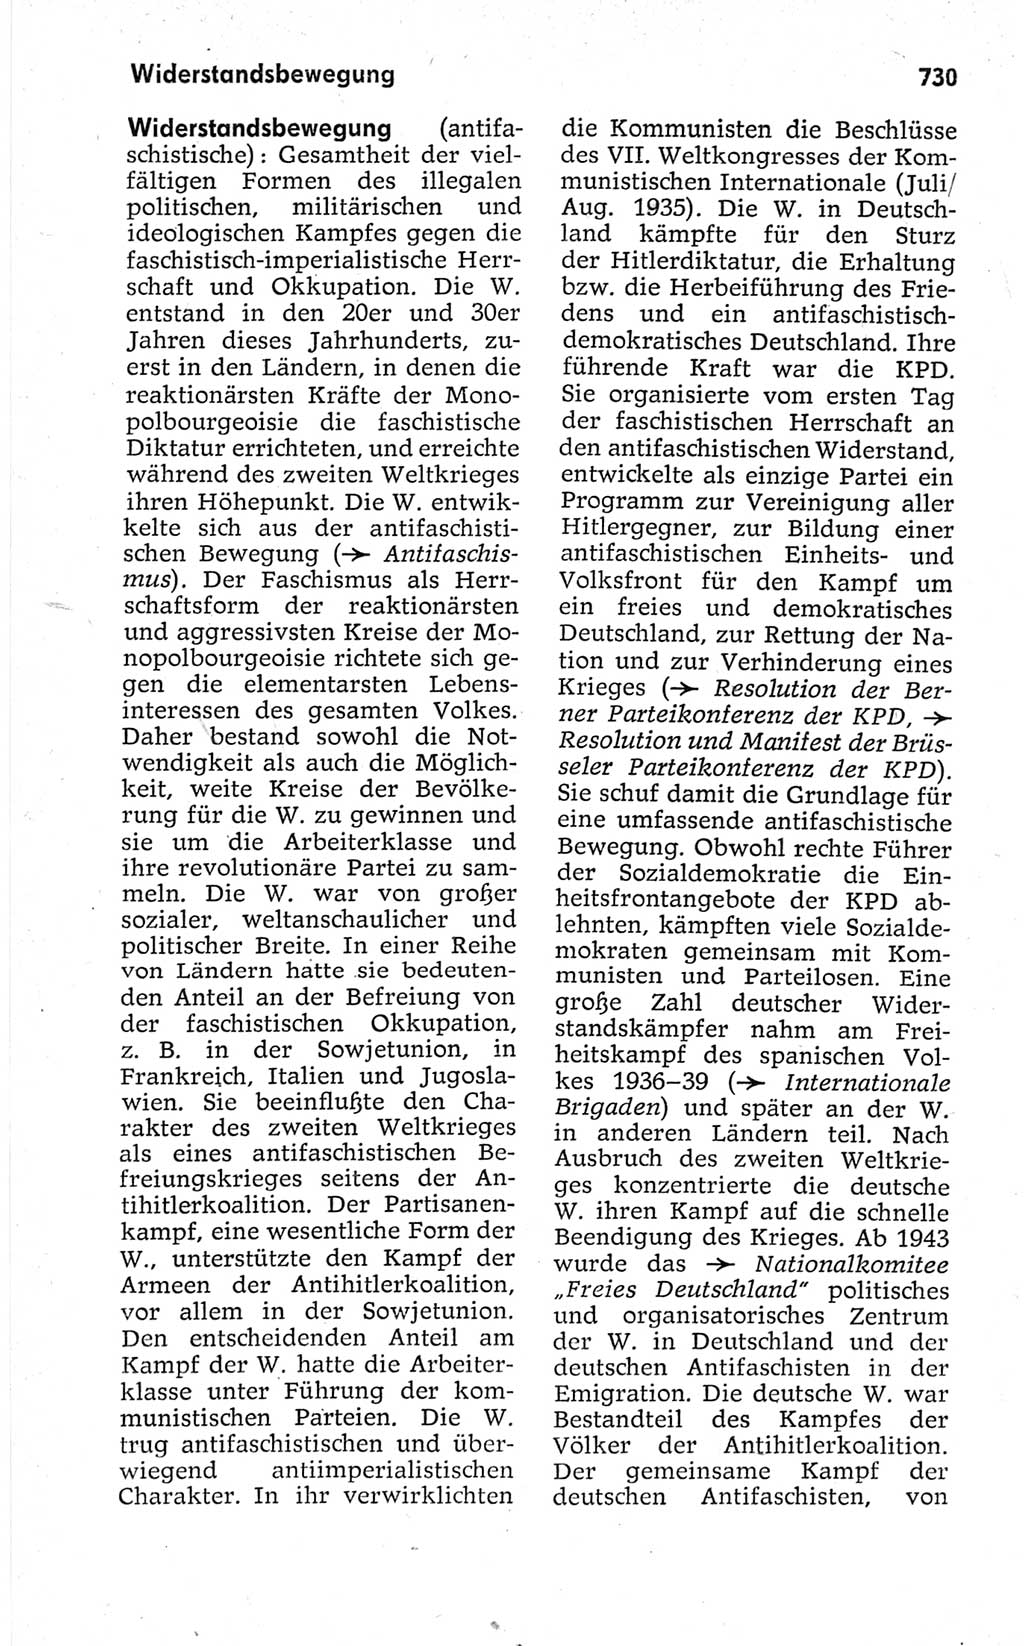 Kleines politisches Wörterbuch [Deutsche Demokratische Republik (DDR)] 1967, Seite 730 (Kl. pol. Wb. DDR 1967, S. 730)